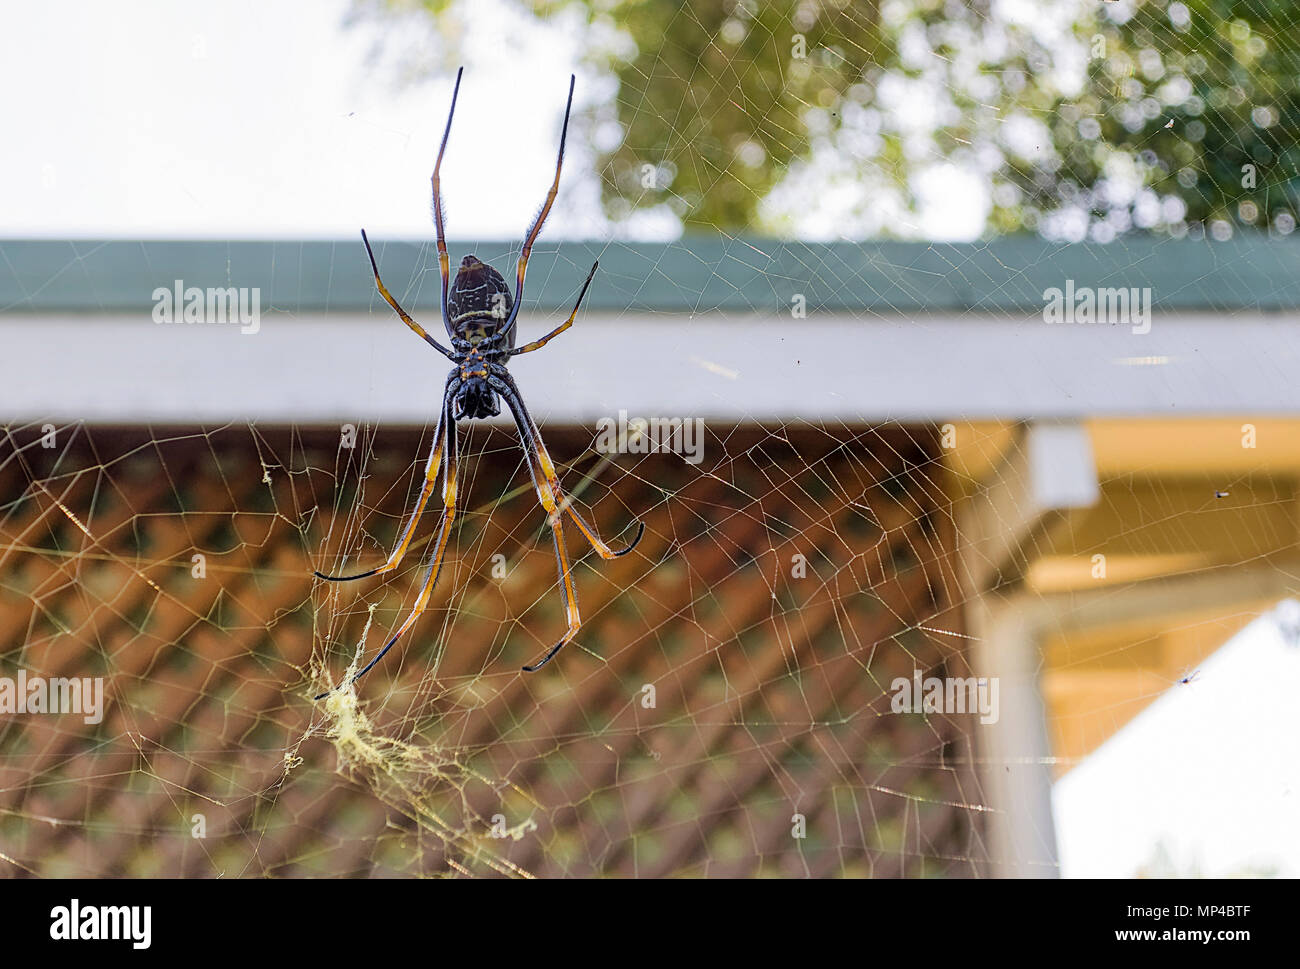 Vert in Queensland, die Spinne baut ein incredibally strong Web. Selbst große Insekten haben Mühe, die Flucht seiner Web Stockfoto